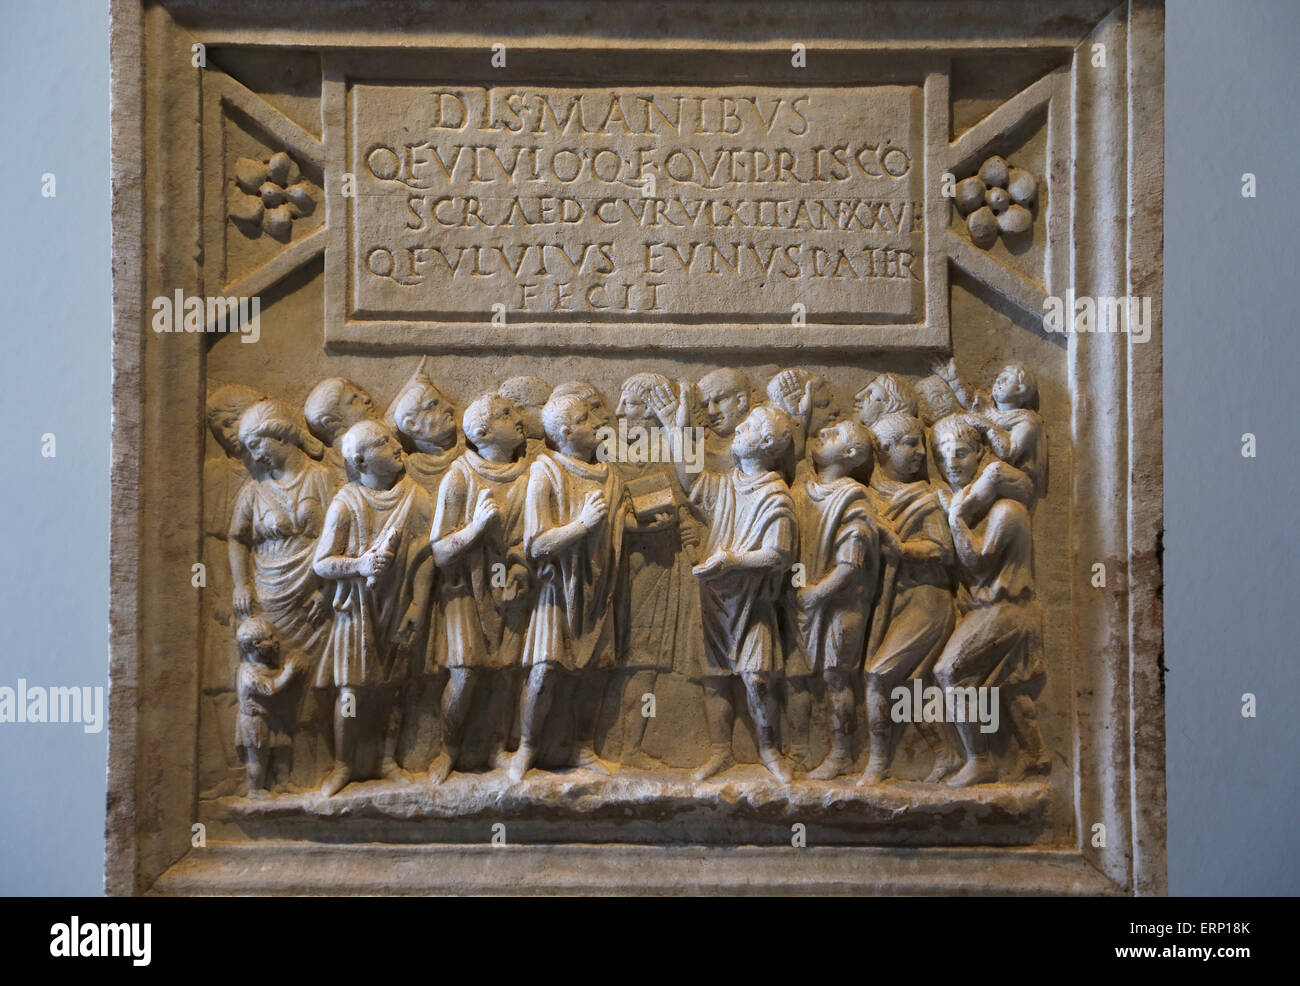 Altare cineraria di segretari del governo. Roma. 1° C. D. Fulvius e suo fratello Quintus Fulvius Prisco, che ha servito come scribae Foto Stock